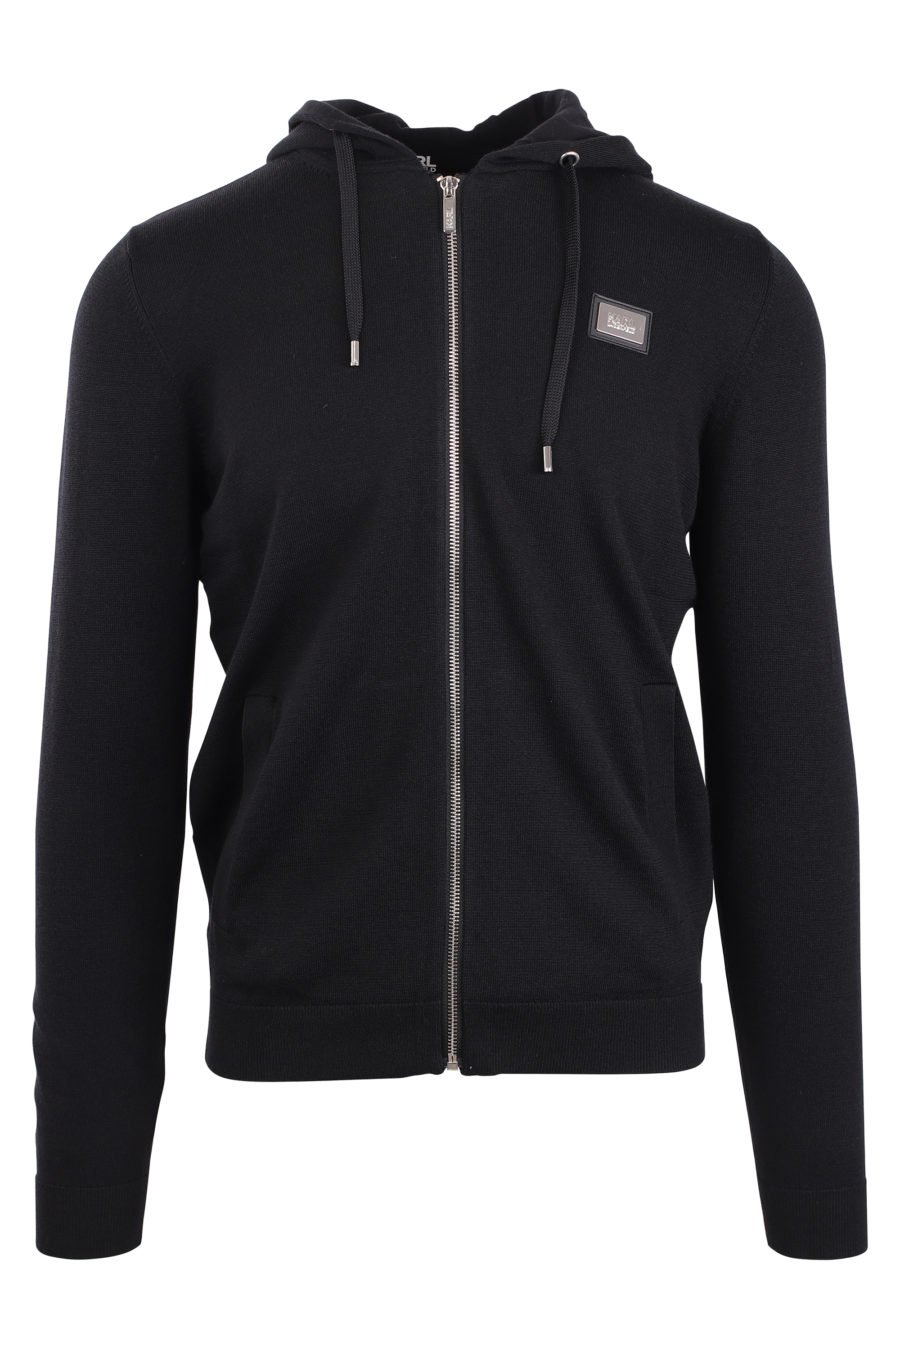 Schwarze Jacke mit Kapuze und kleinem Logo - IMG 0926